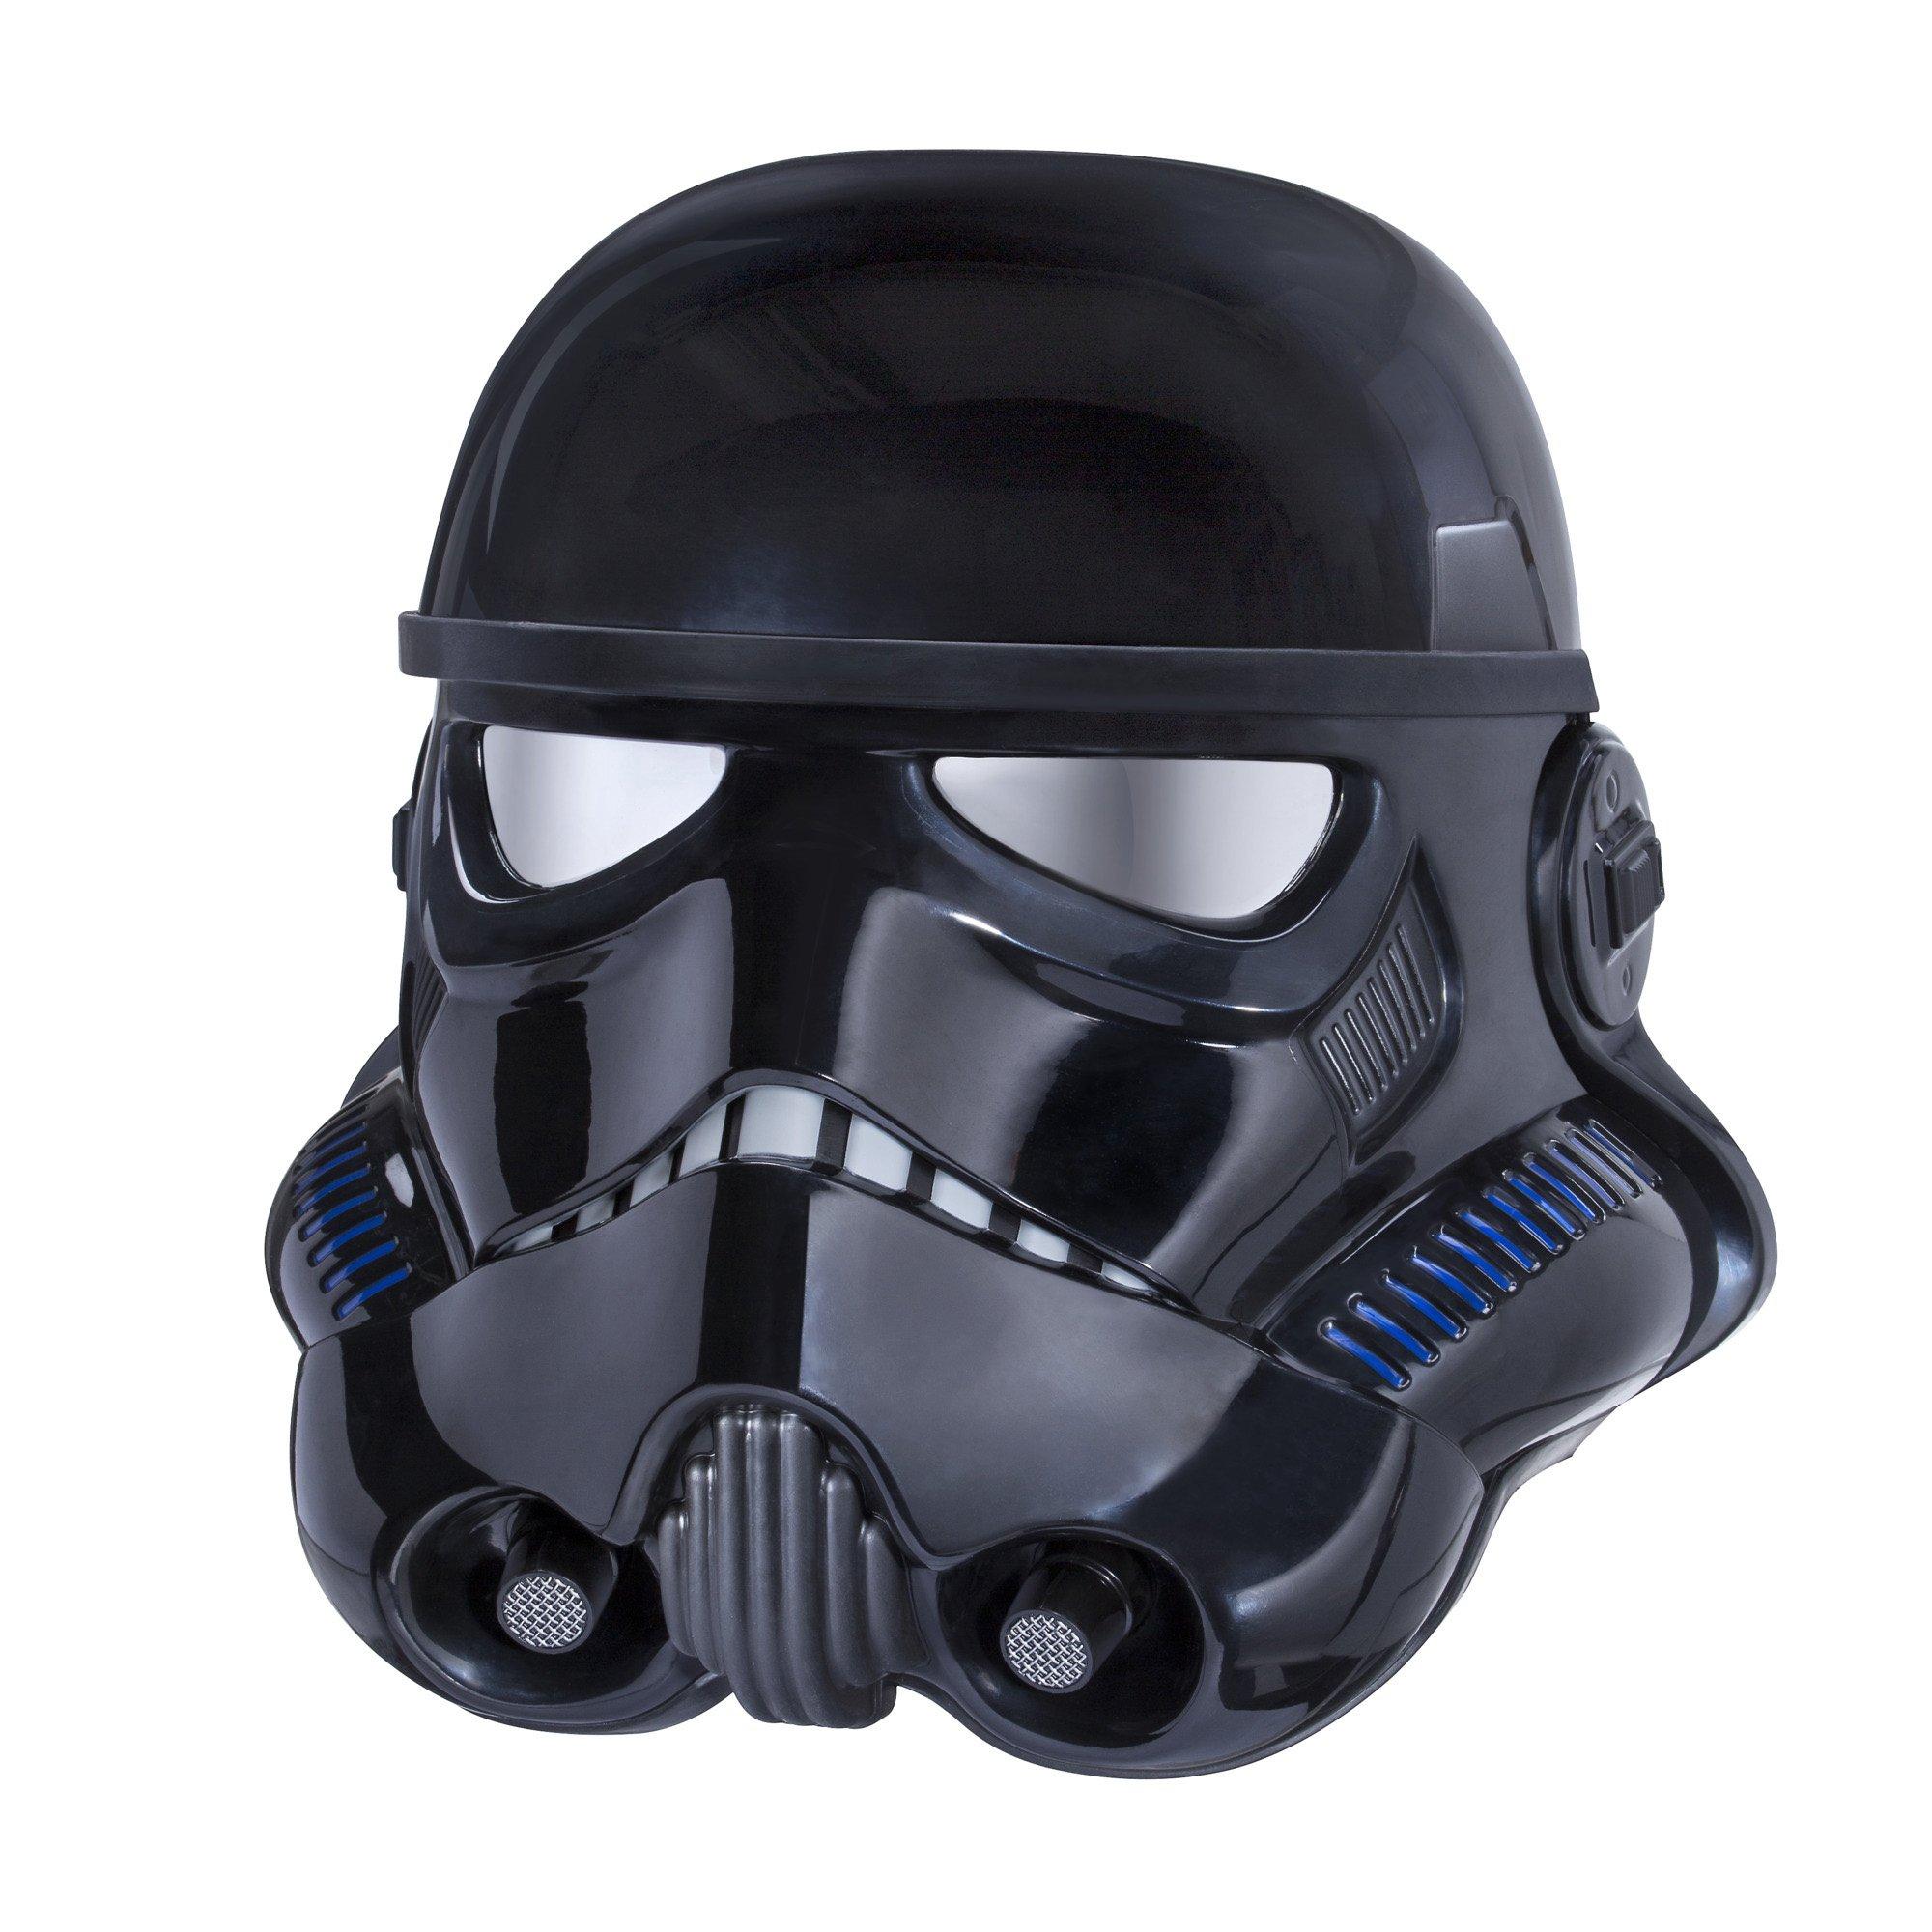 Hasbro Star Wars: The Black Series Battlefront Shadow Trooper Voice Changer Helmet GameStop Exclusive